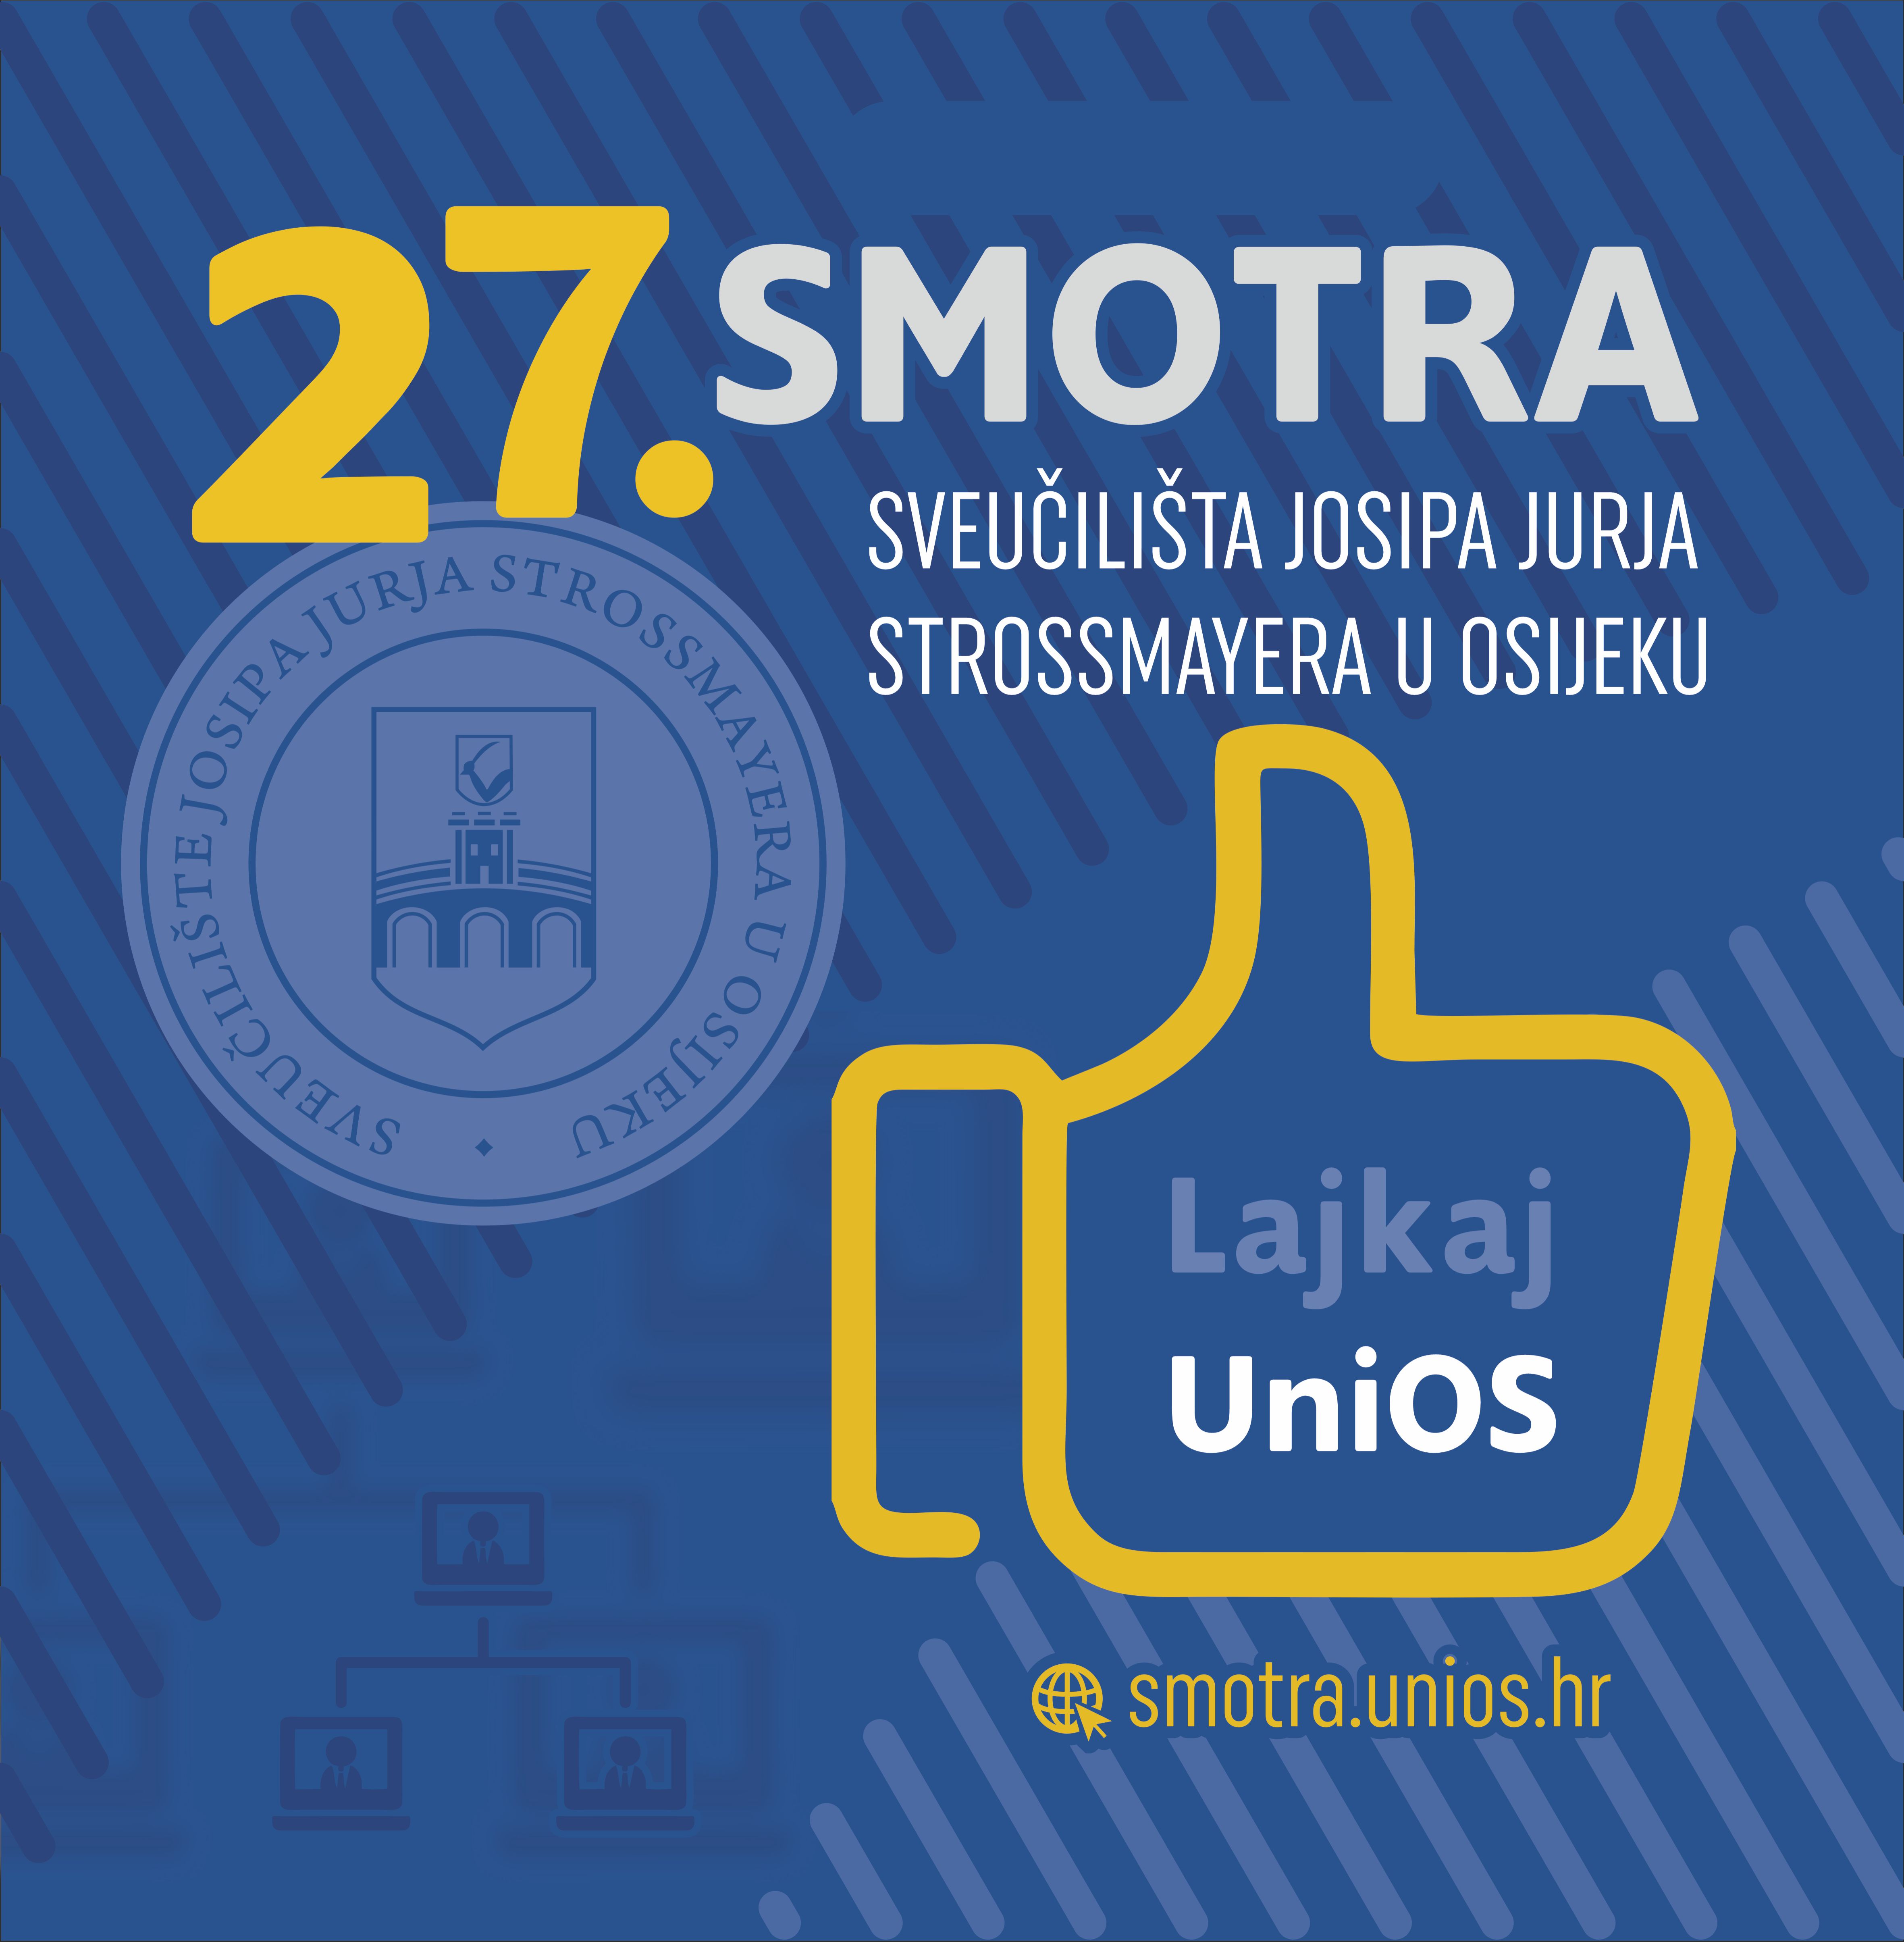 27. smotra Sveučilišta J. J. Strossmayera u Osijeku